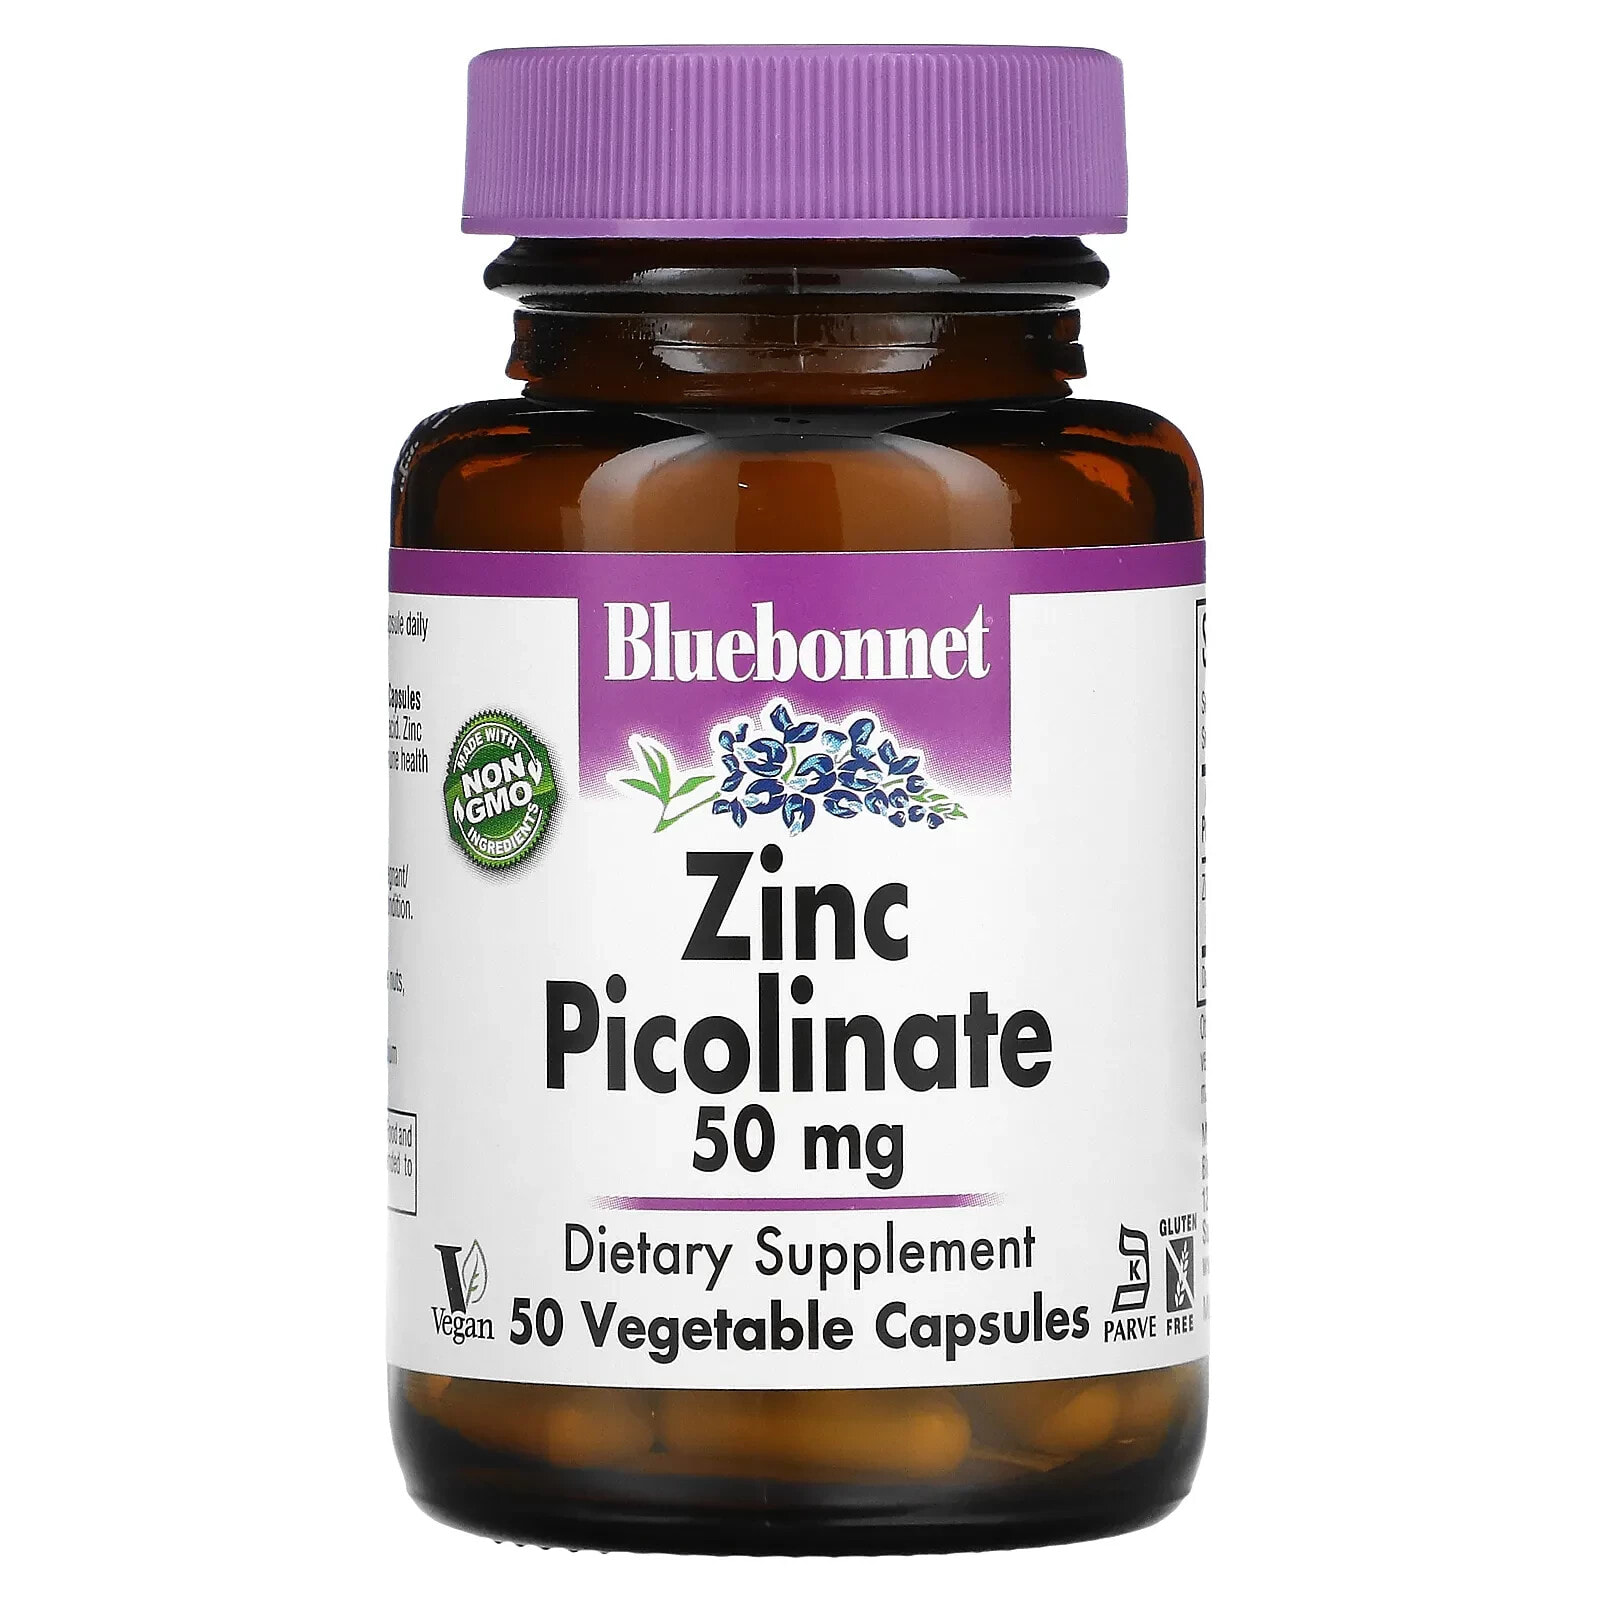 Bluebonnet Nutrition, Zinc Picolinate, 50 mg, 100 Vegetable Capsules